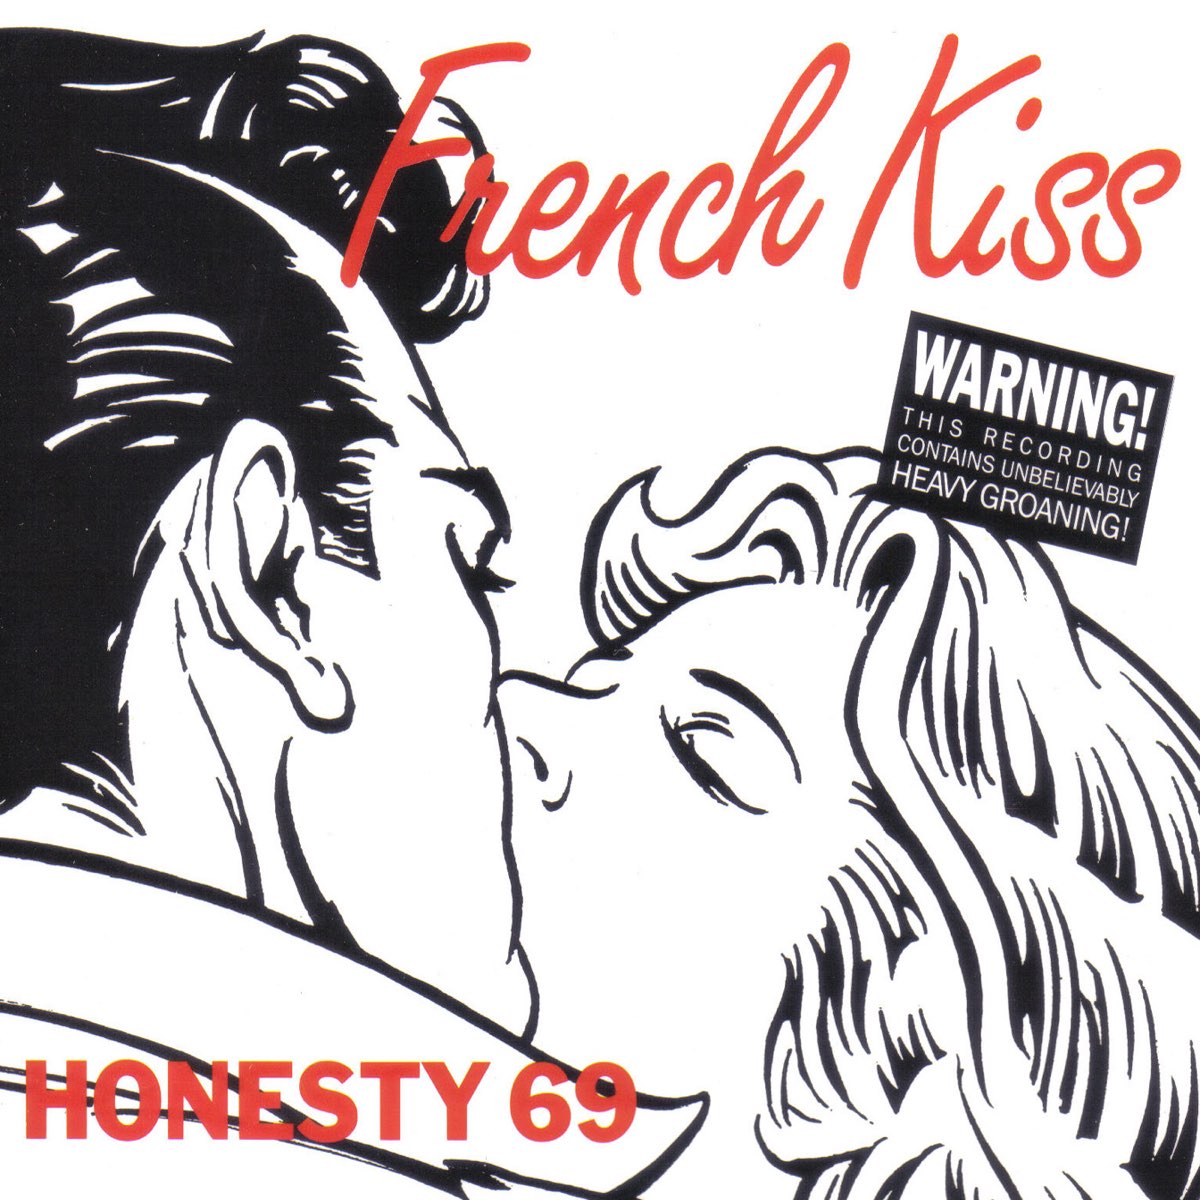 Французский поцелуй. Французский поцелуй 69. Французский поцелуй обложка. 69 На французском. Трио 69